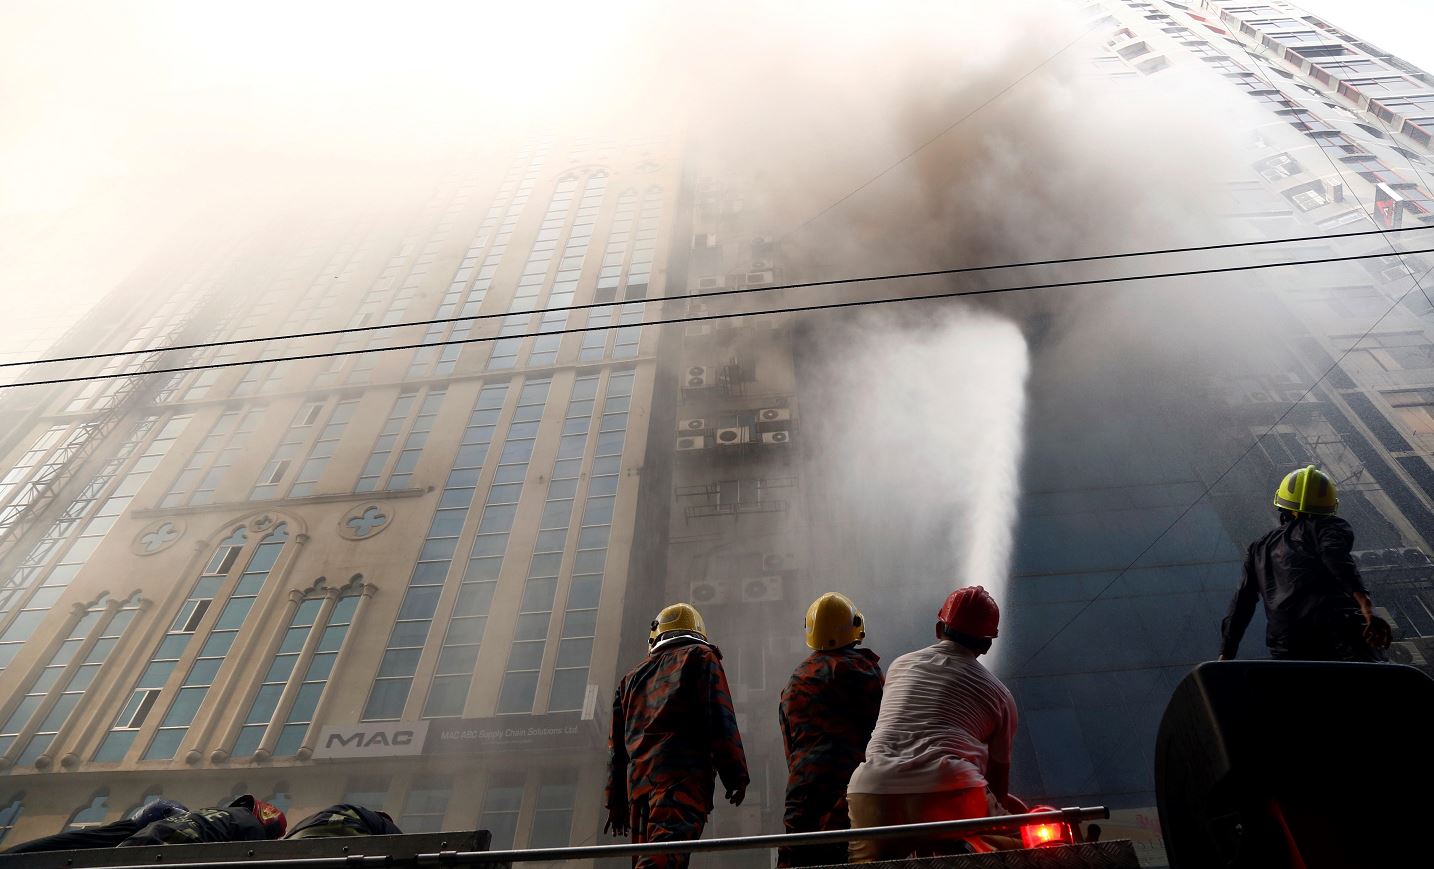 fOTO: Bomberos de Bangladesh intentan apagar el incendio que se ha producido en un rascacielos, 28 MARZO 2019